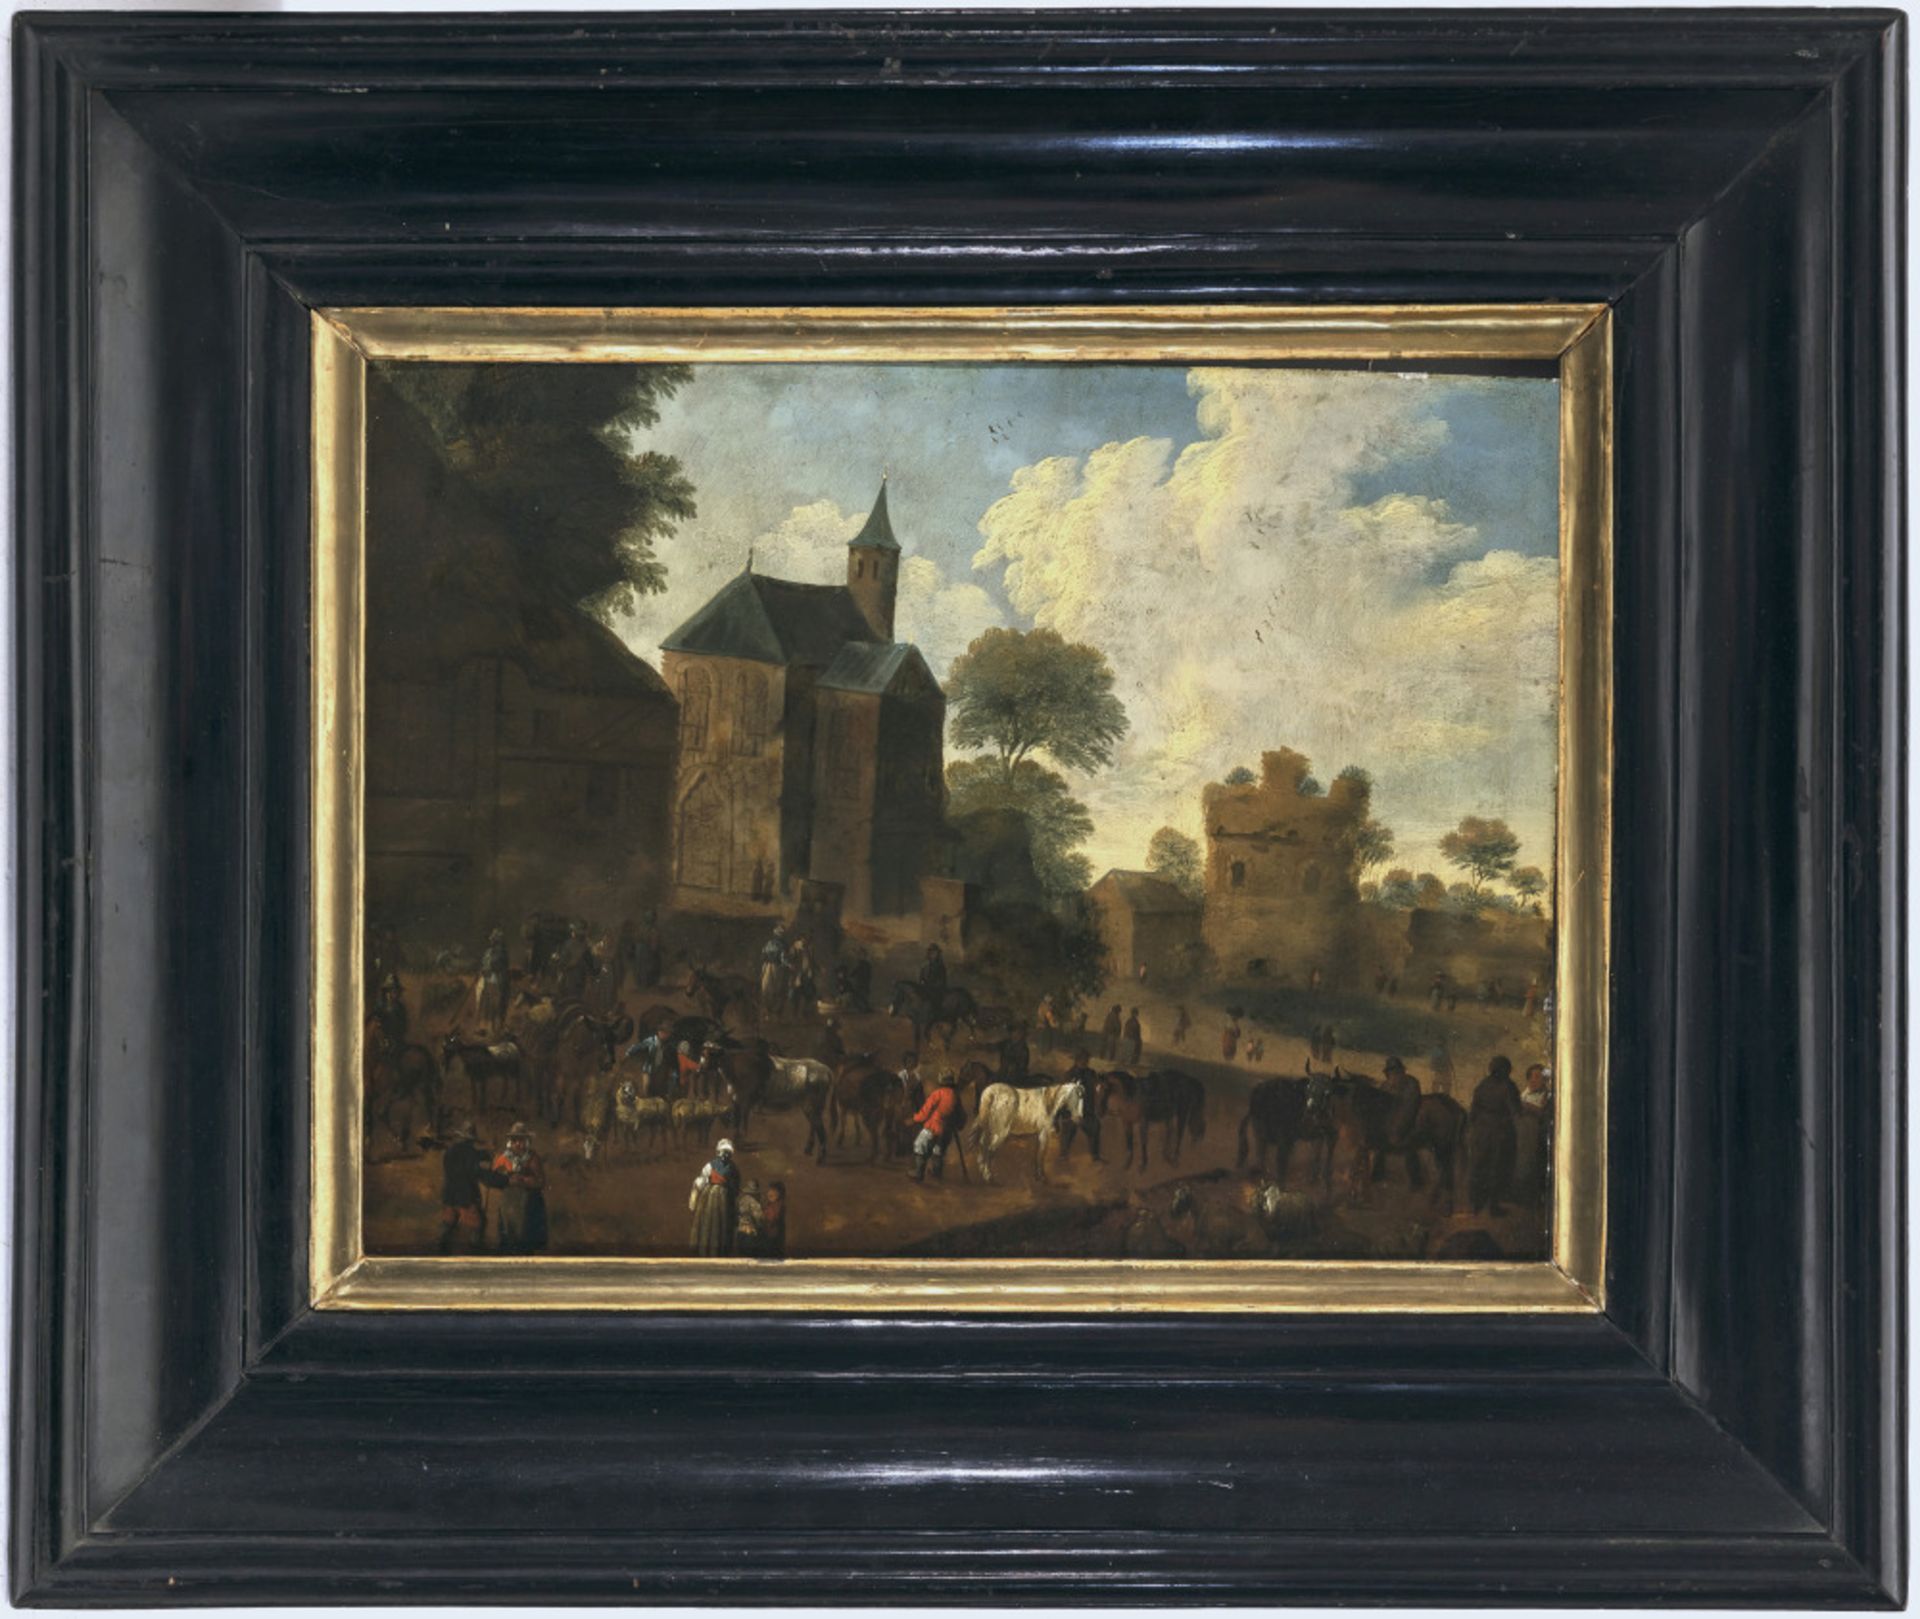 Niederlande 17th century - Cattle market - Image 2 of 2